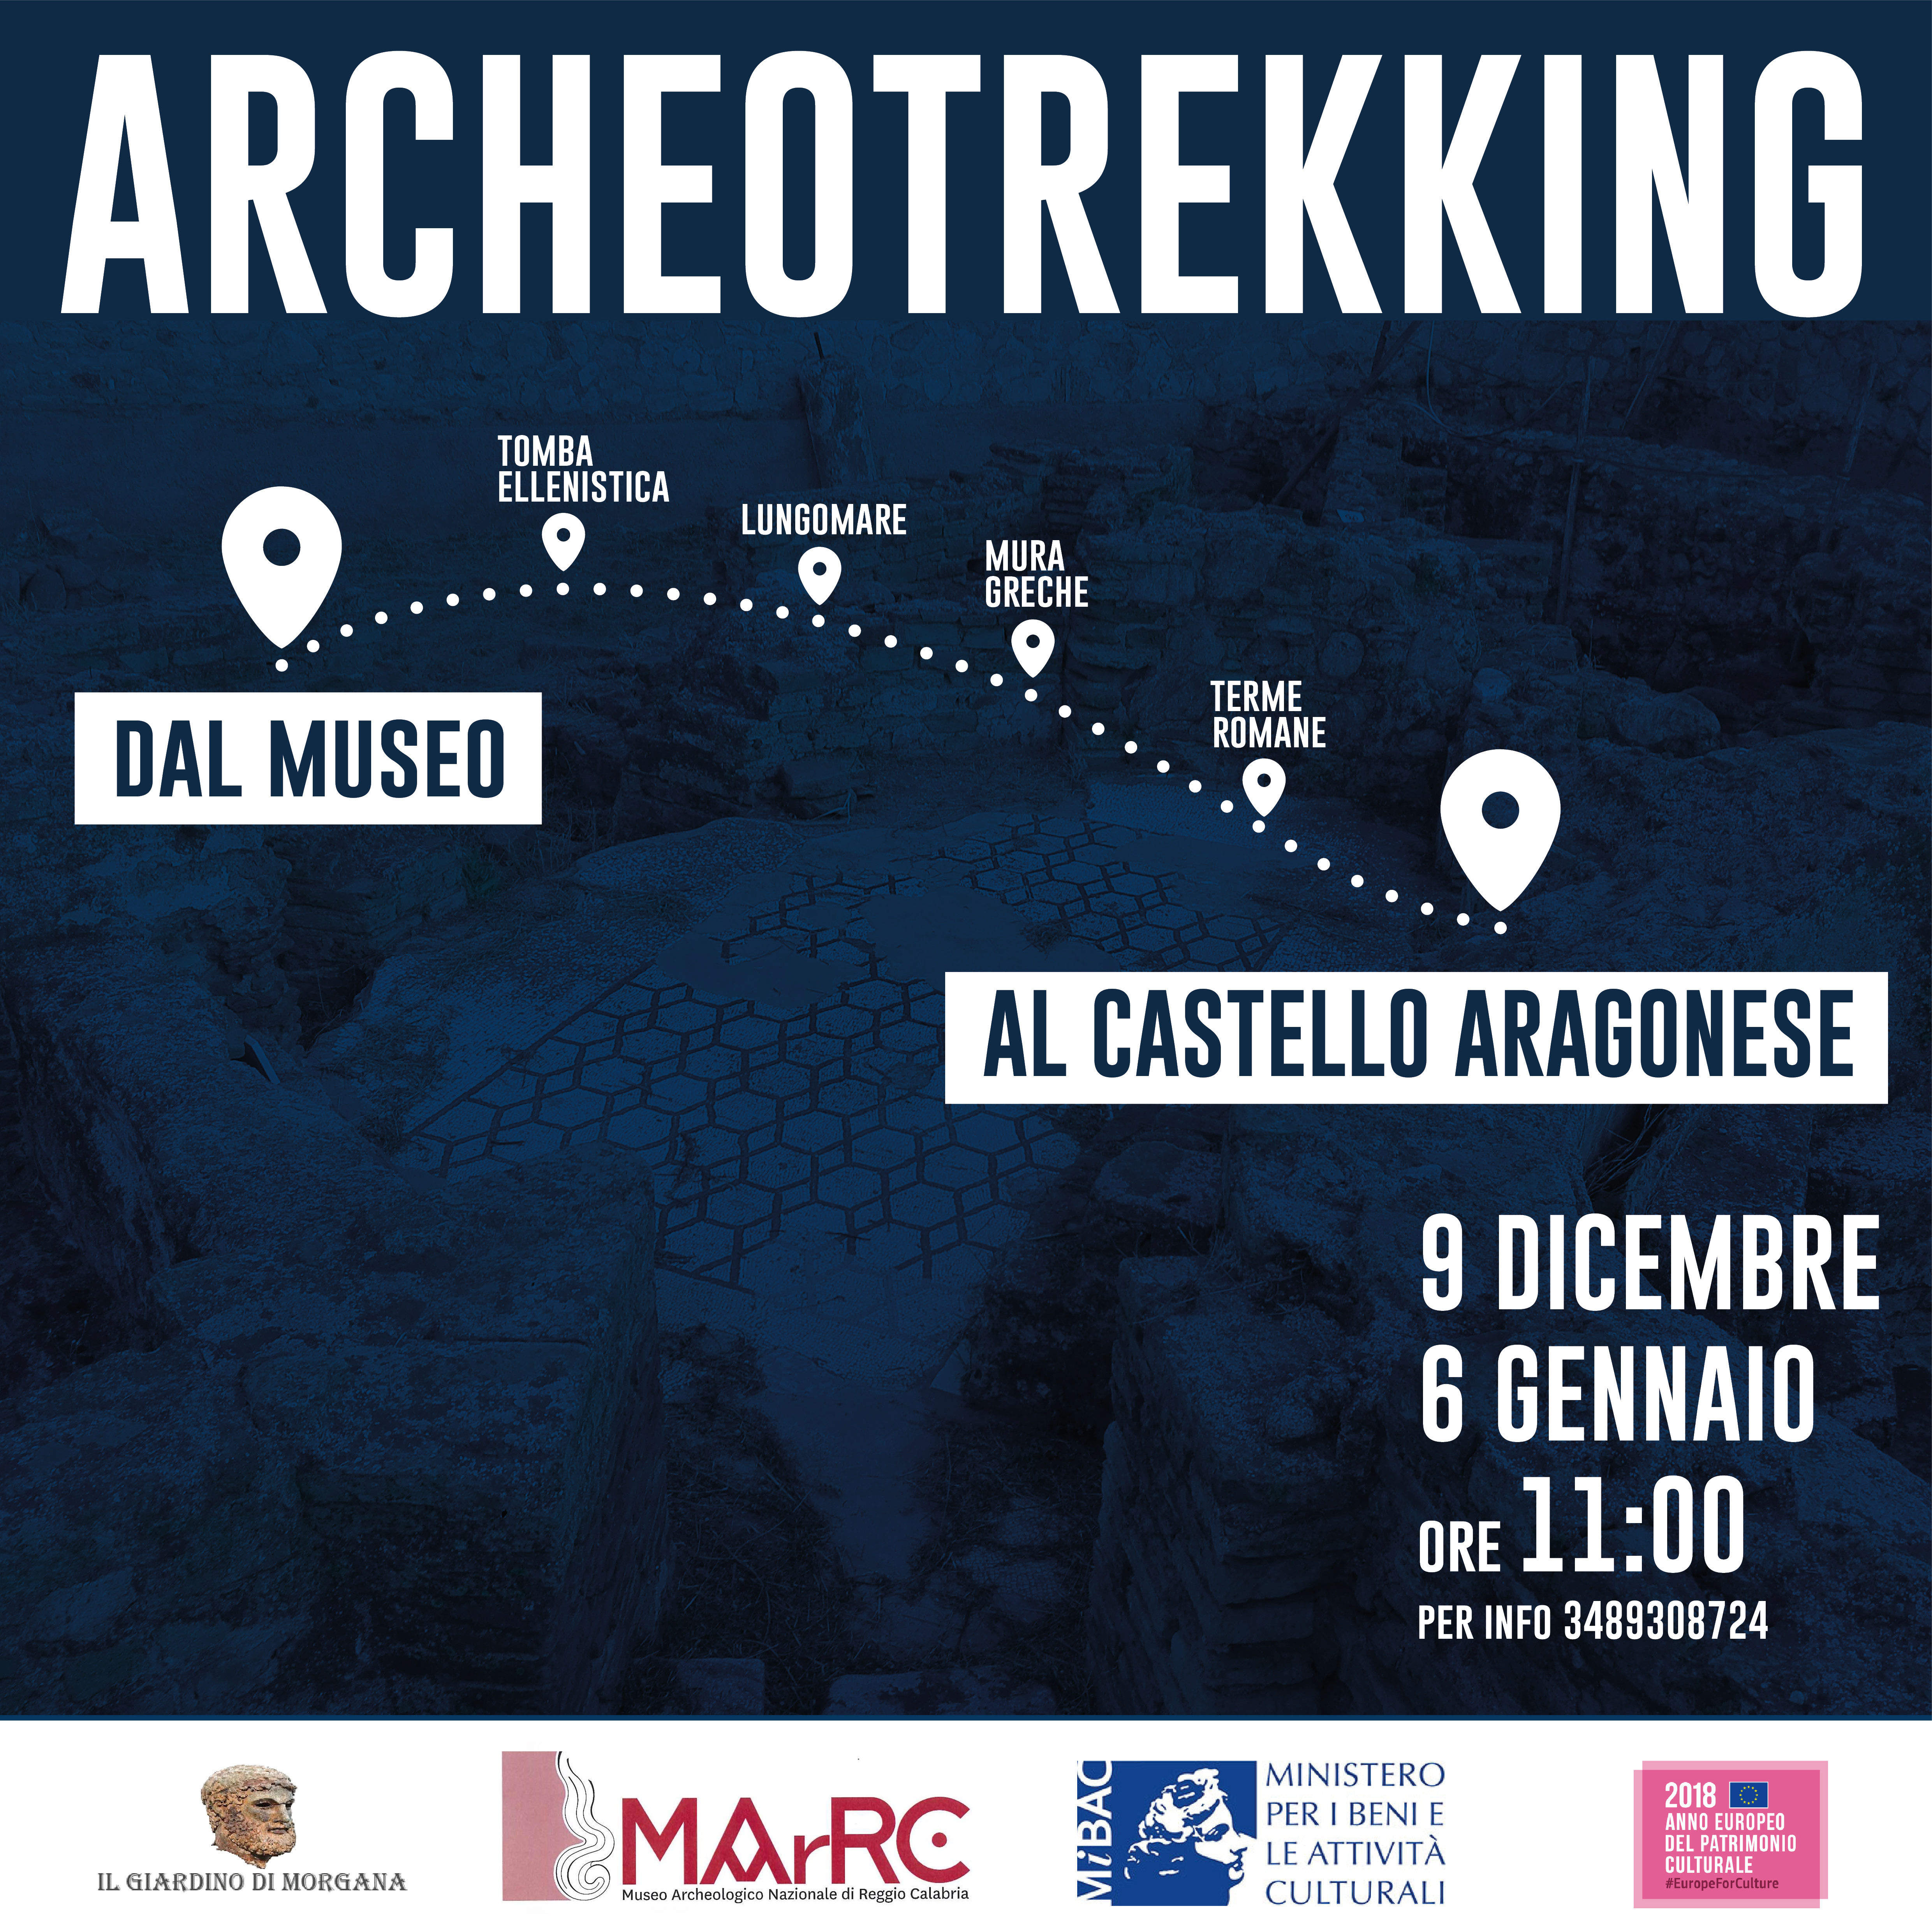 L' Archeotrekking che a Reggio collega il Museo al Castello Aragonese